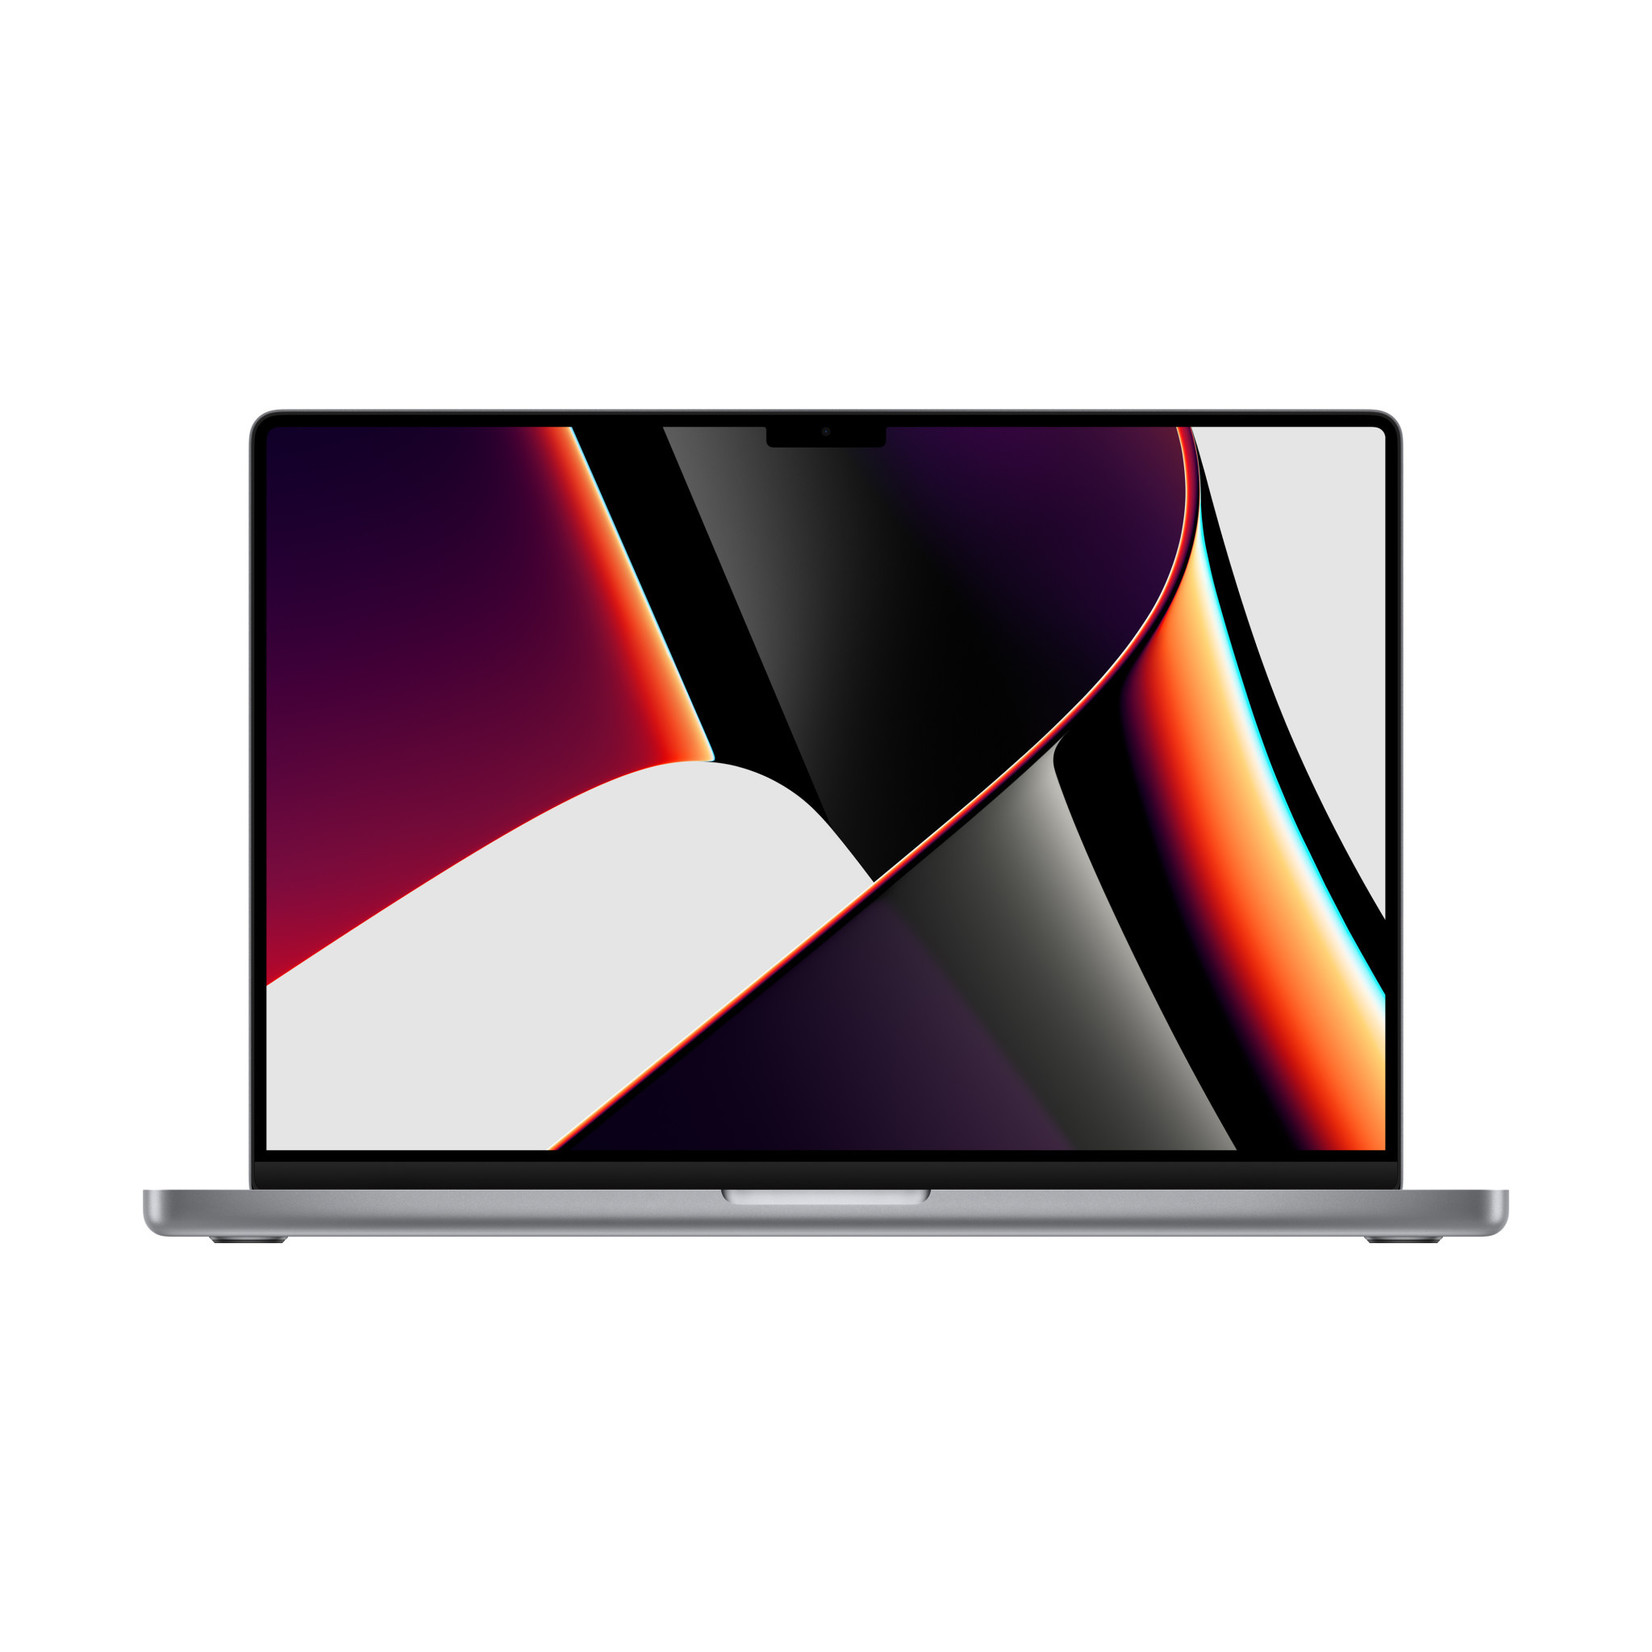 16-inch MacBook Pro: M1 Pro chip, 10-core CPU 16-core GPU, 16GB